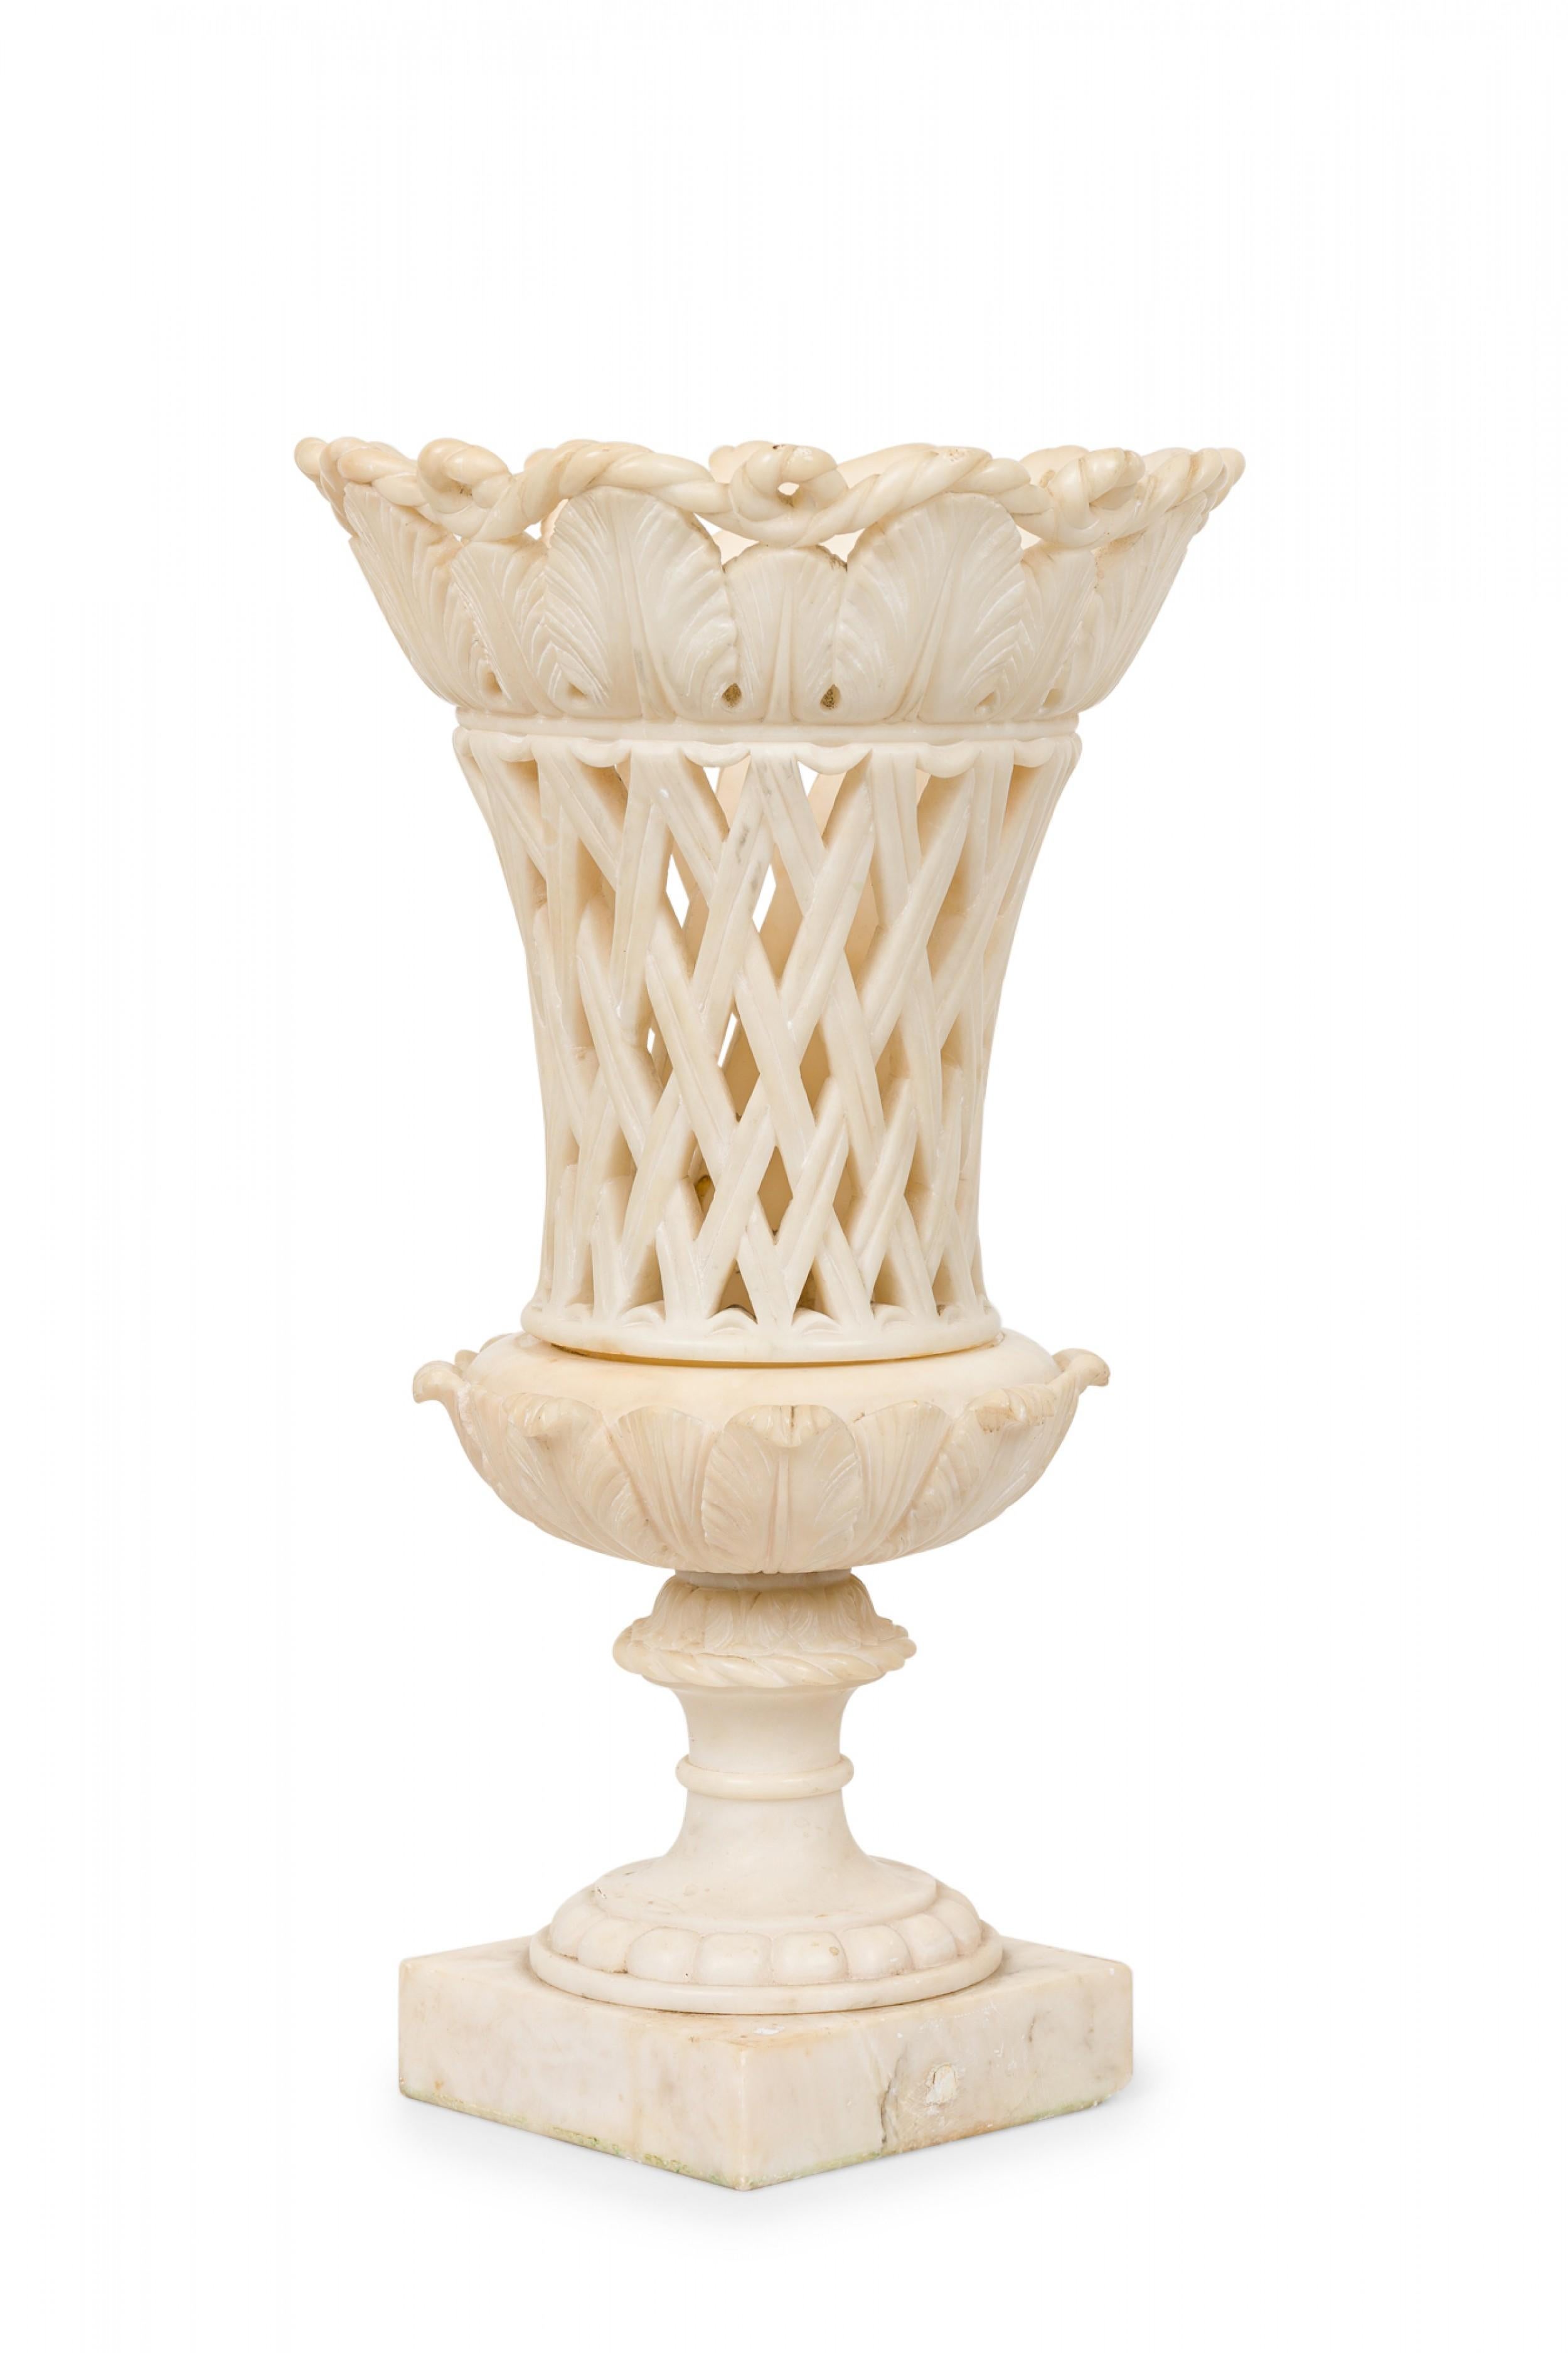 Italienischer neoklassizistischer Grand-Tour-Aufsatz aus weißem Marmor in Form einer Urne mit einer Lippe mit Seil- und Blattmuster und einem rautenförmigen Körper, der auf einem quadratischen Sockel aus weißem Marmor ruht.
